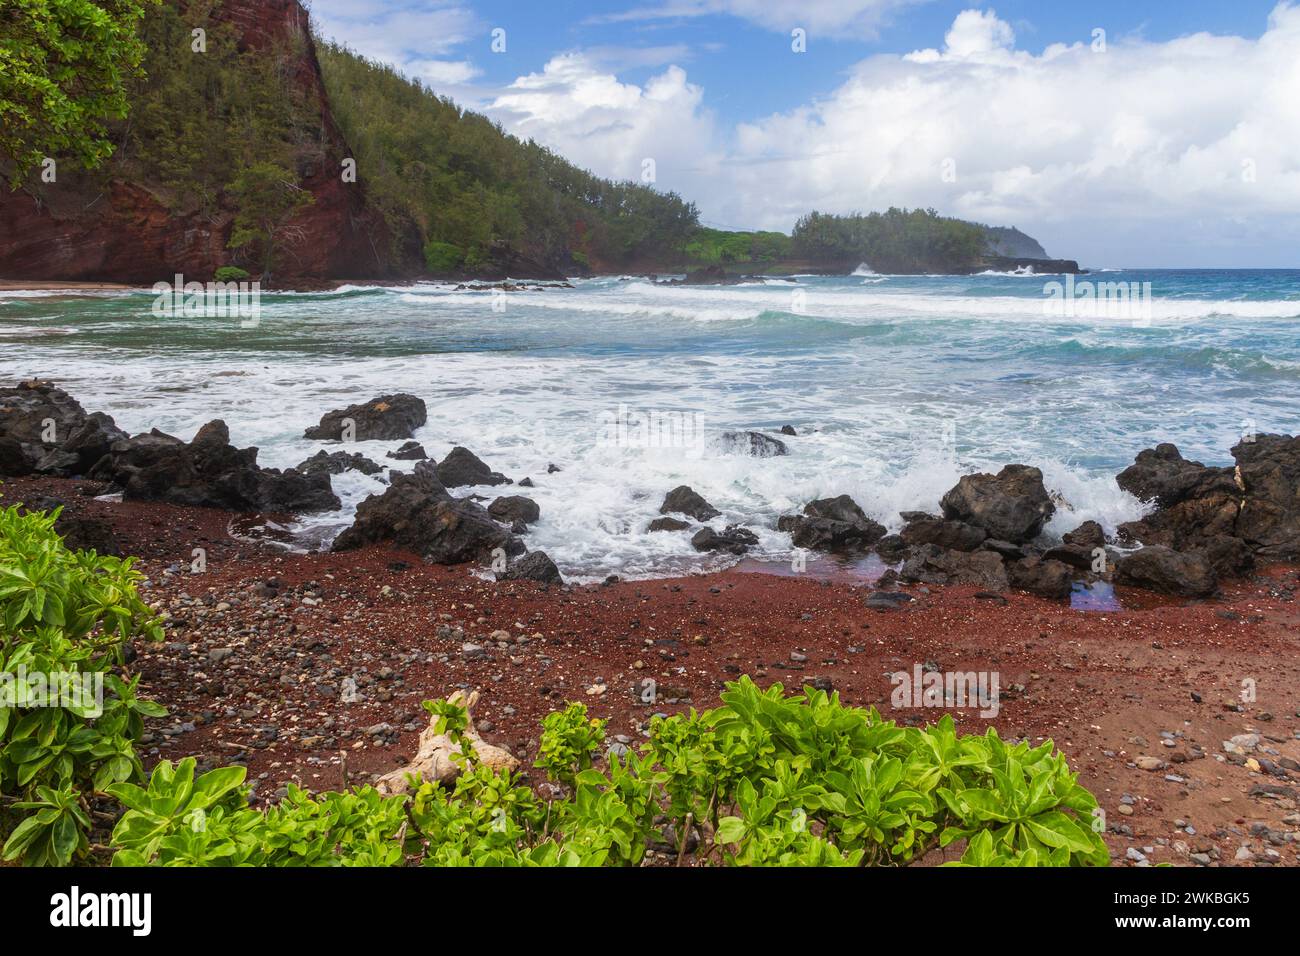 Kaihalulu Plage de sable rouge près du village de Hana sur la célèbre route de Hana sur l'île de Maui à Hawaii. Banque D'Images